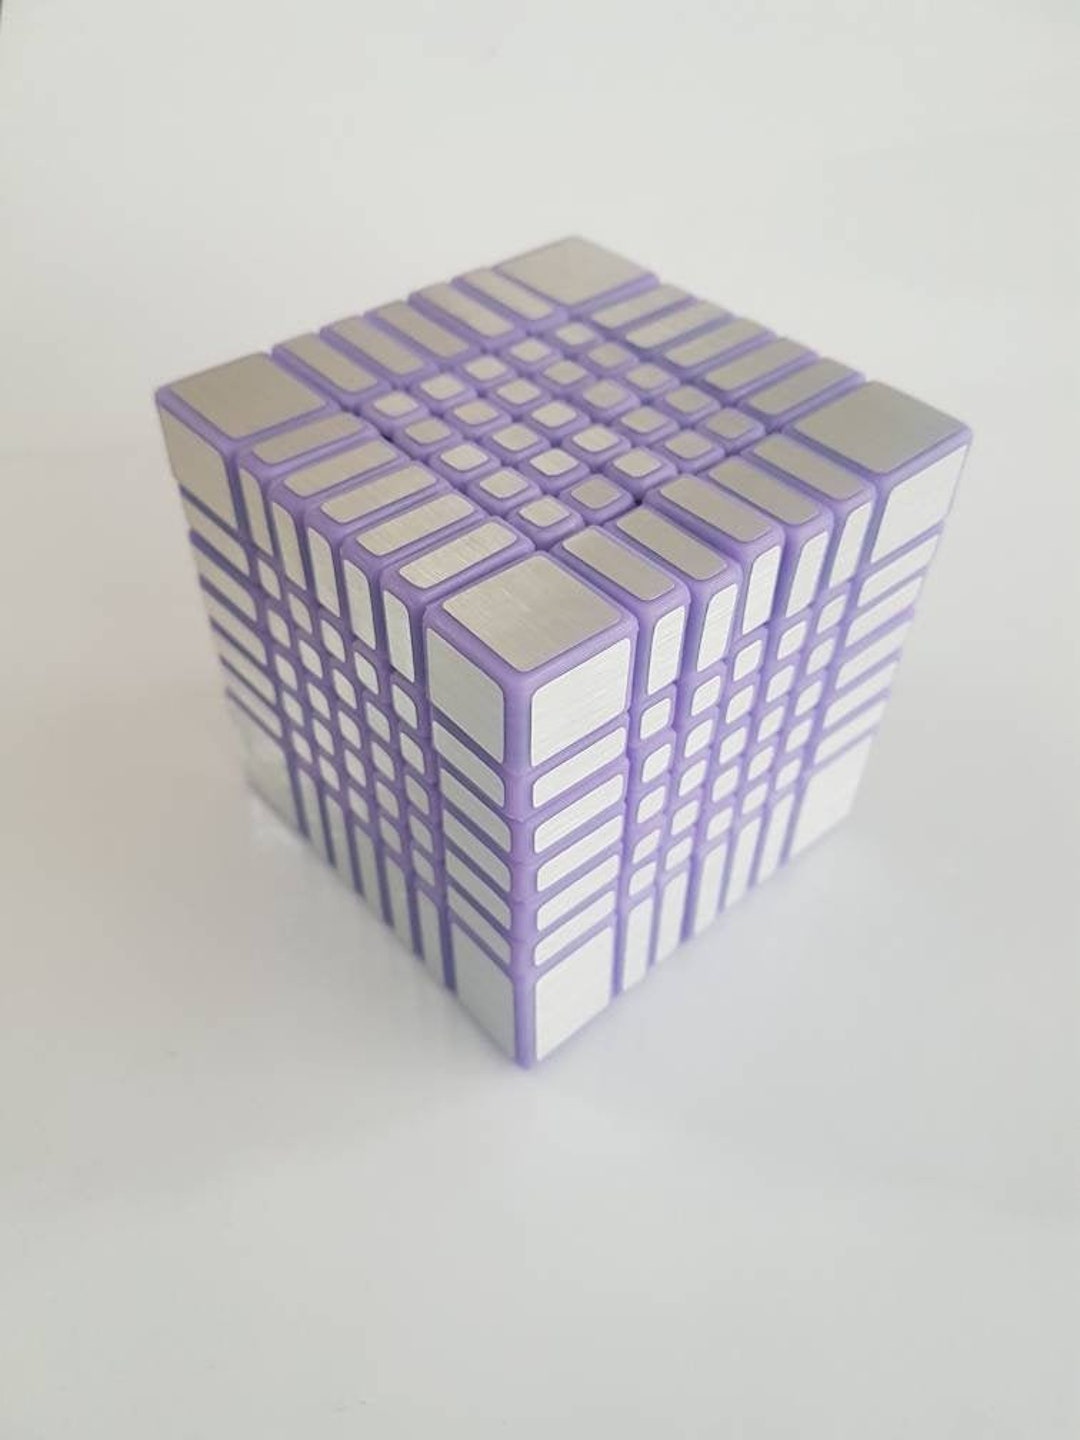 7x7 Bump Mirror Cube 